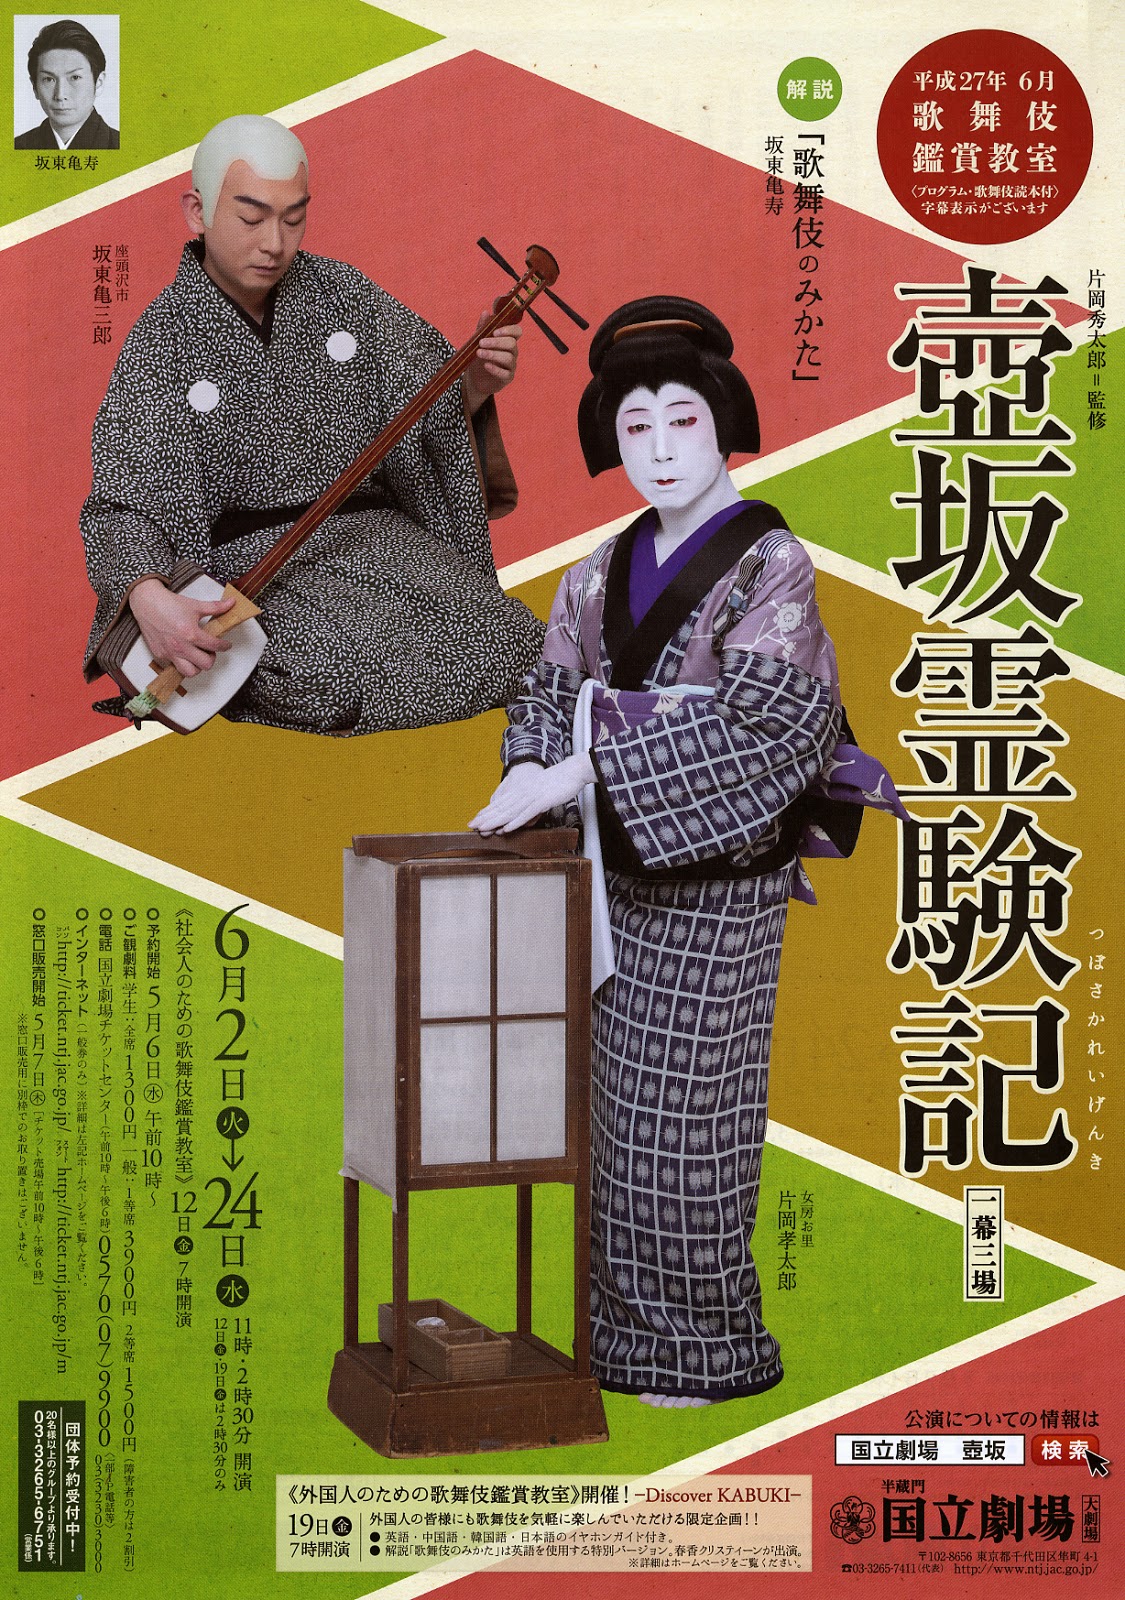 ちーのブログ歌舞伎日記: 2015年6月上演の歌舞伎